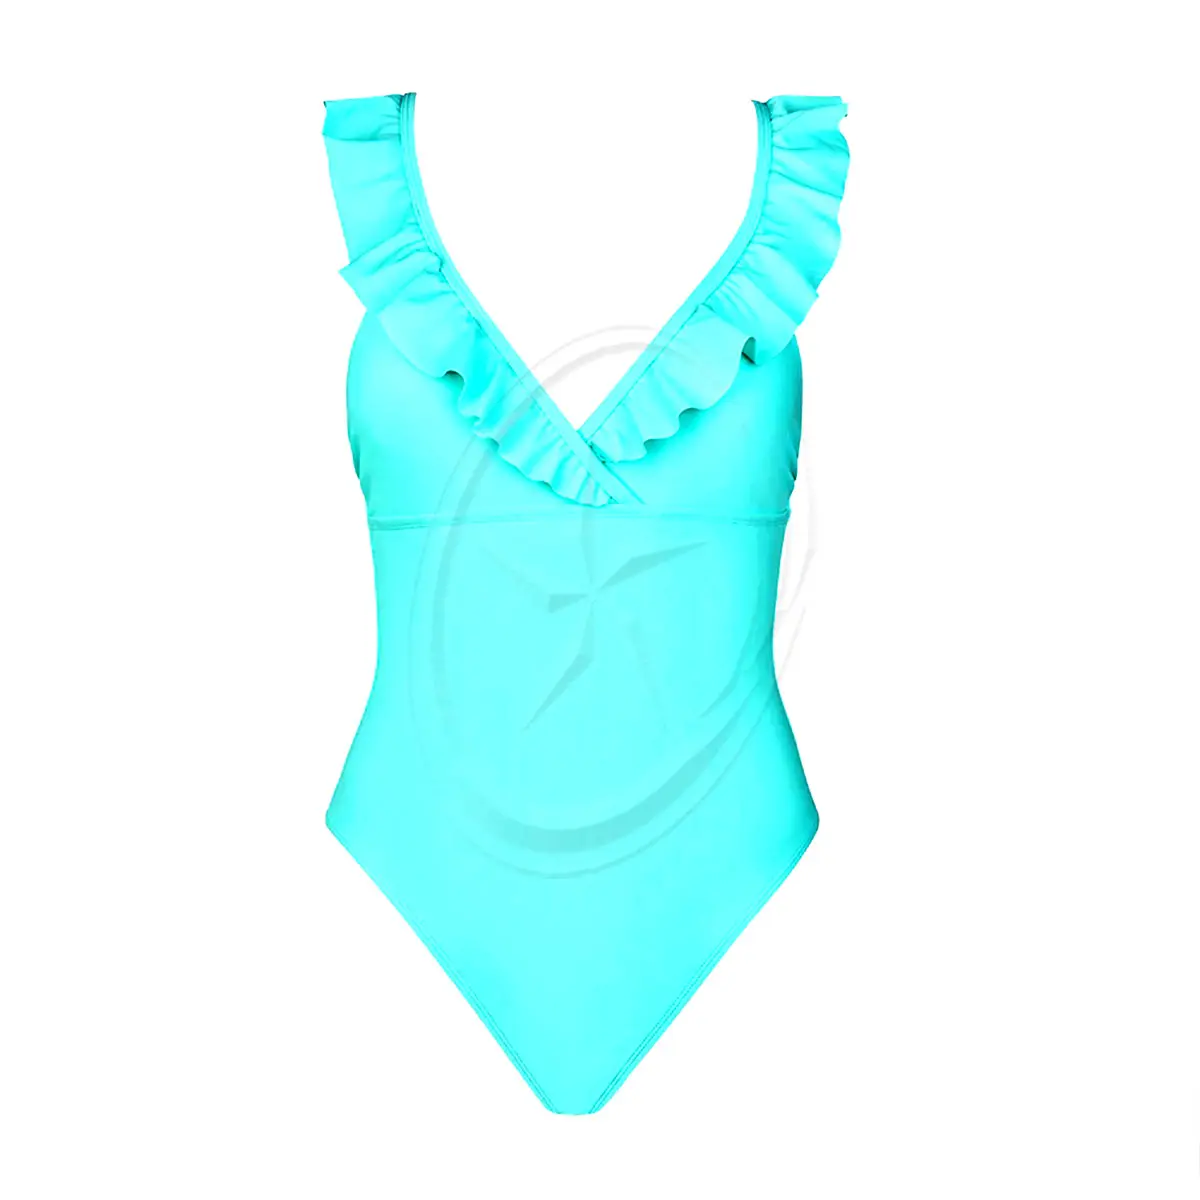 Blanc Noir Bikini Swim Wear maillot de bain femme Push up bleu volants maillot de bain une pièce pour les femmes